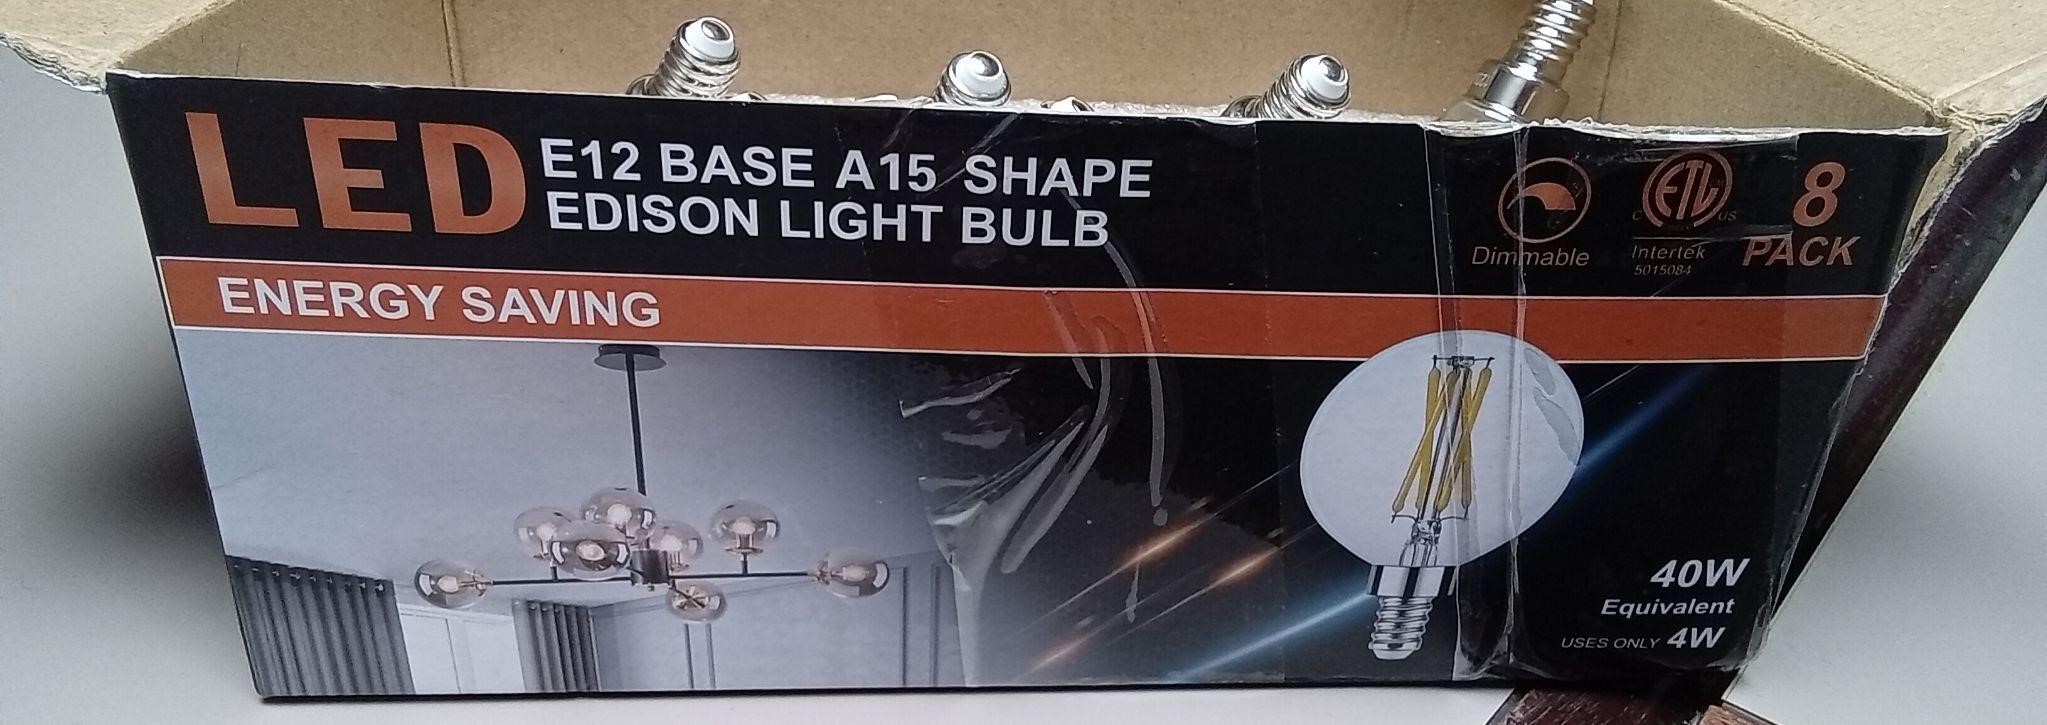 8pk E12 LED Edison Light Bulbs